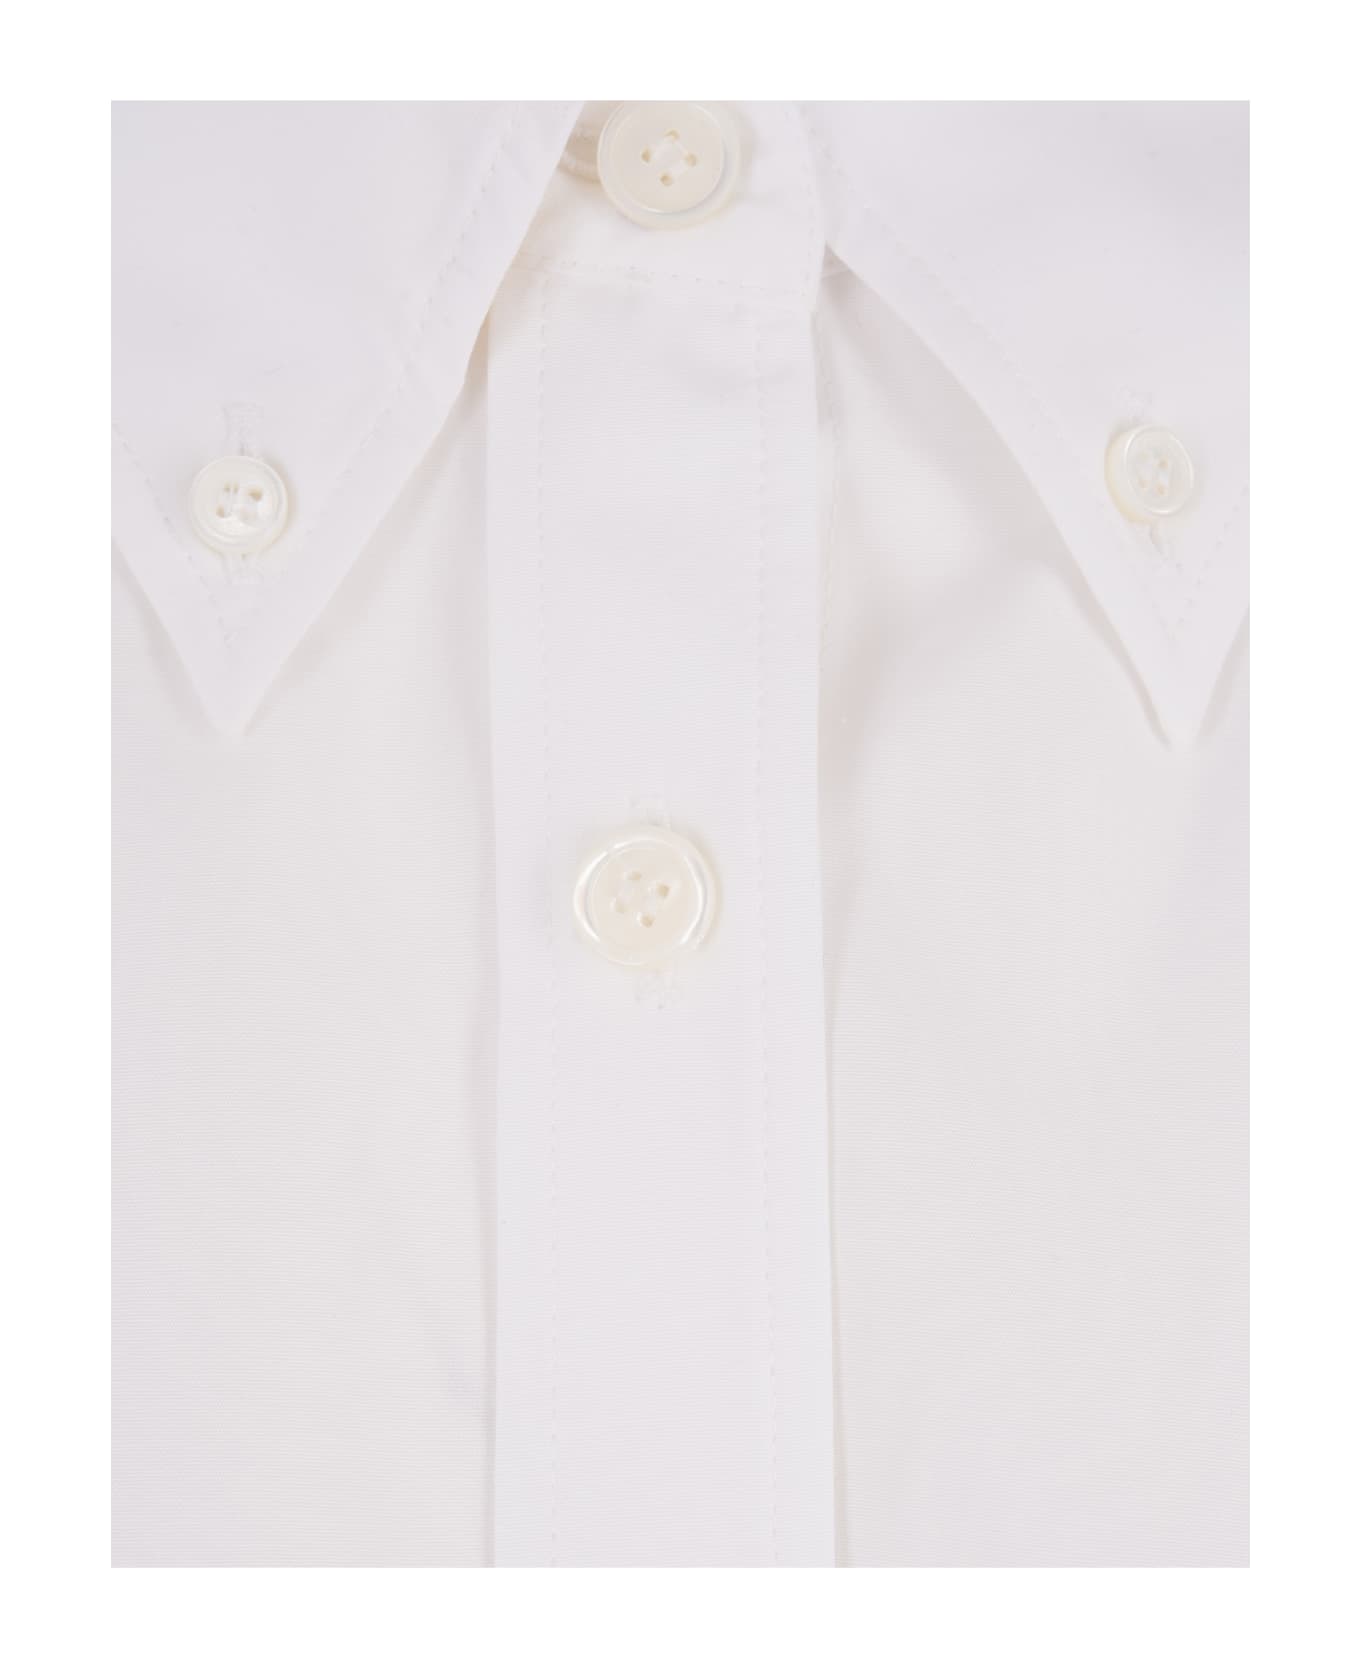 Givenchy Stone Grey Poplin Short Shirt - White シャツ